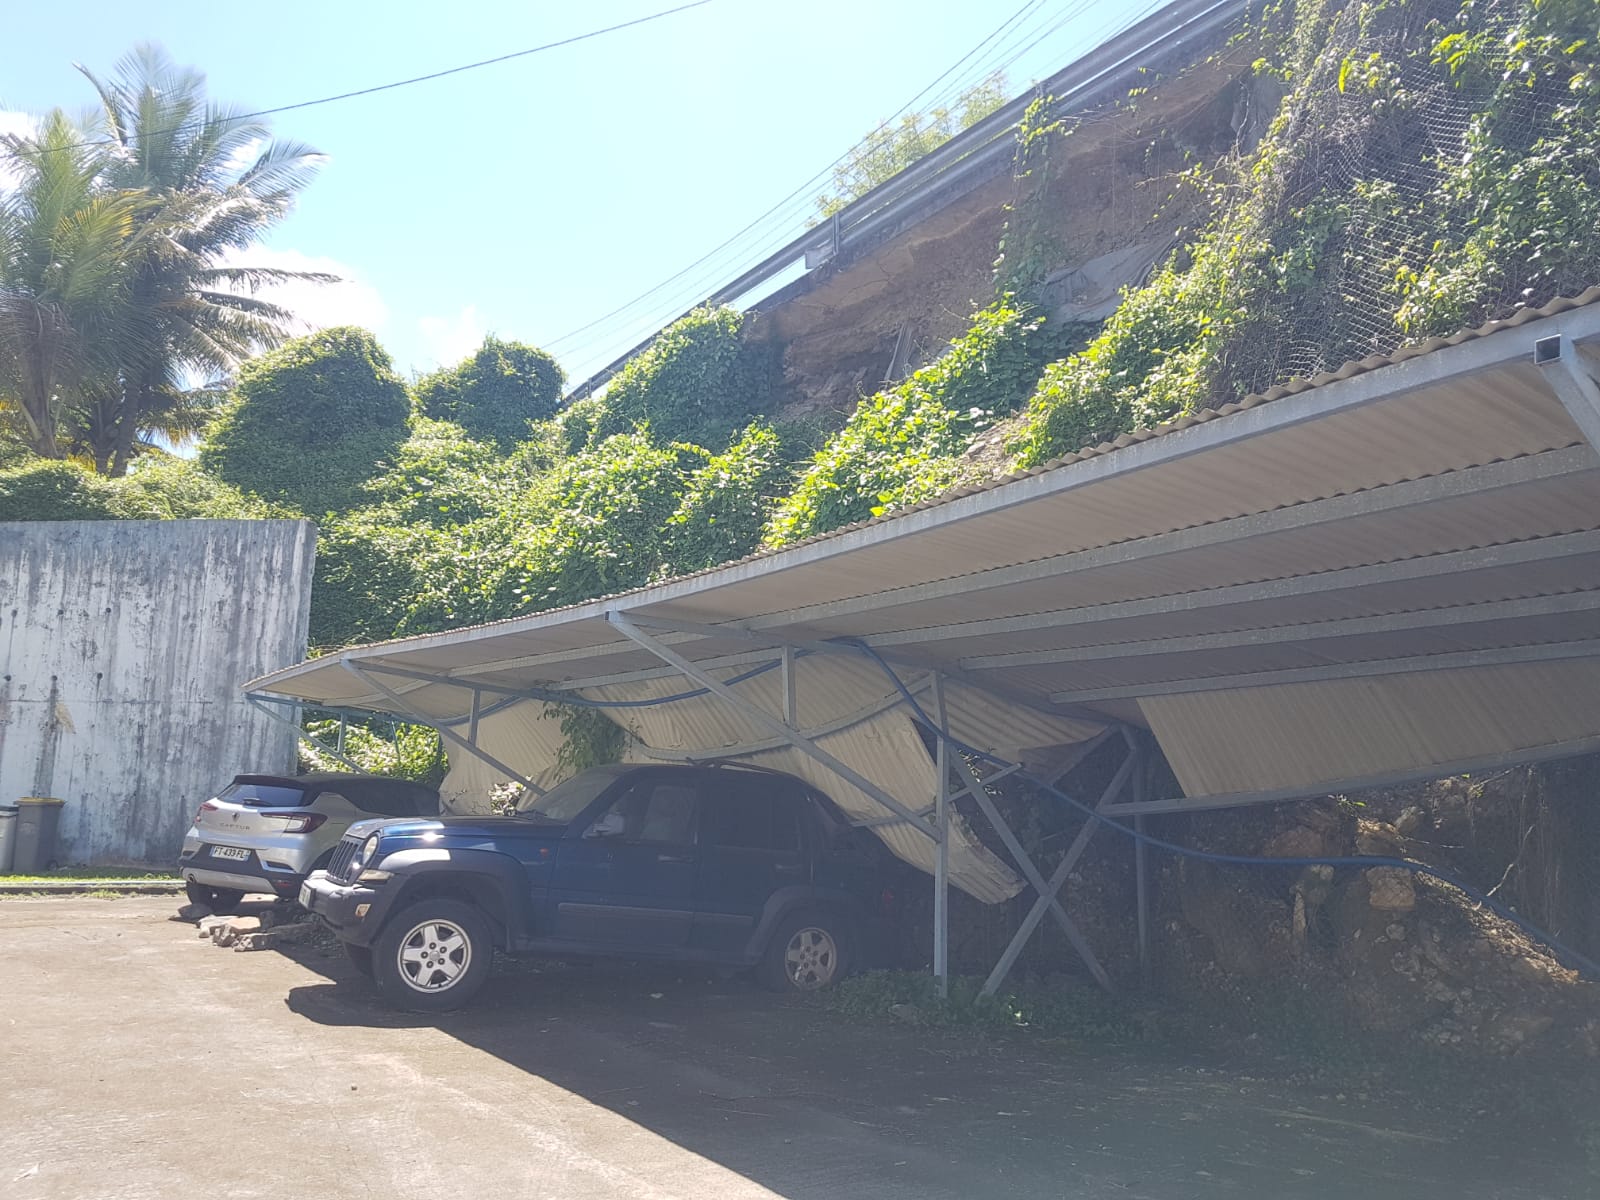     À Desrochers, des voitures bloquées par un glissement de terrain depuis quatre mois

